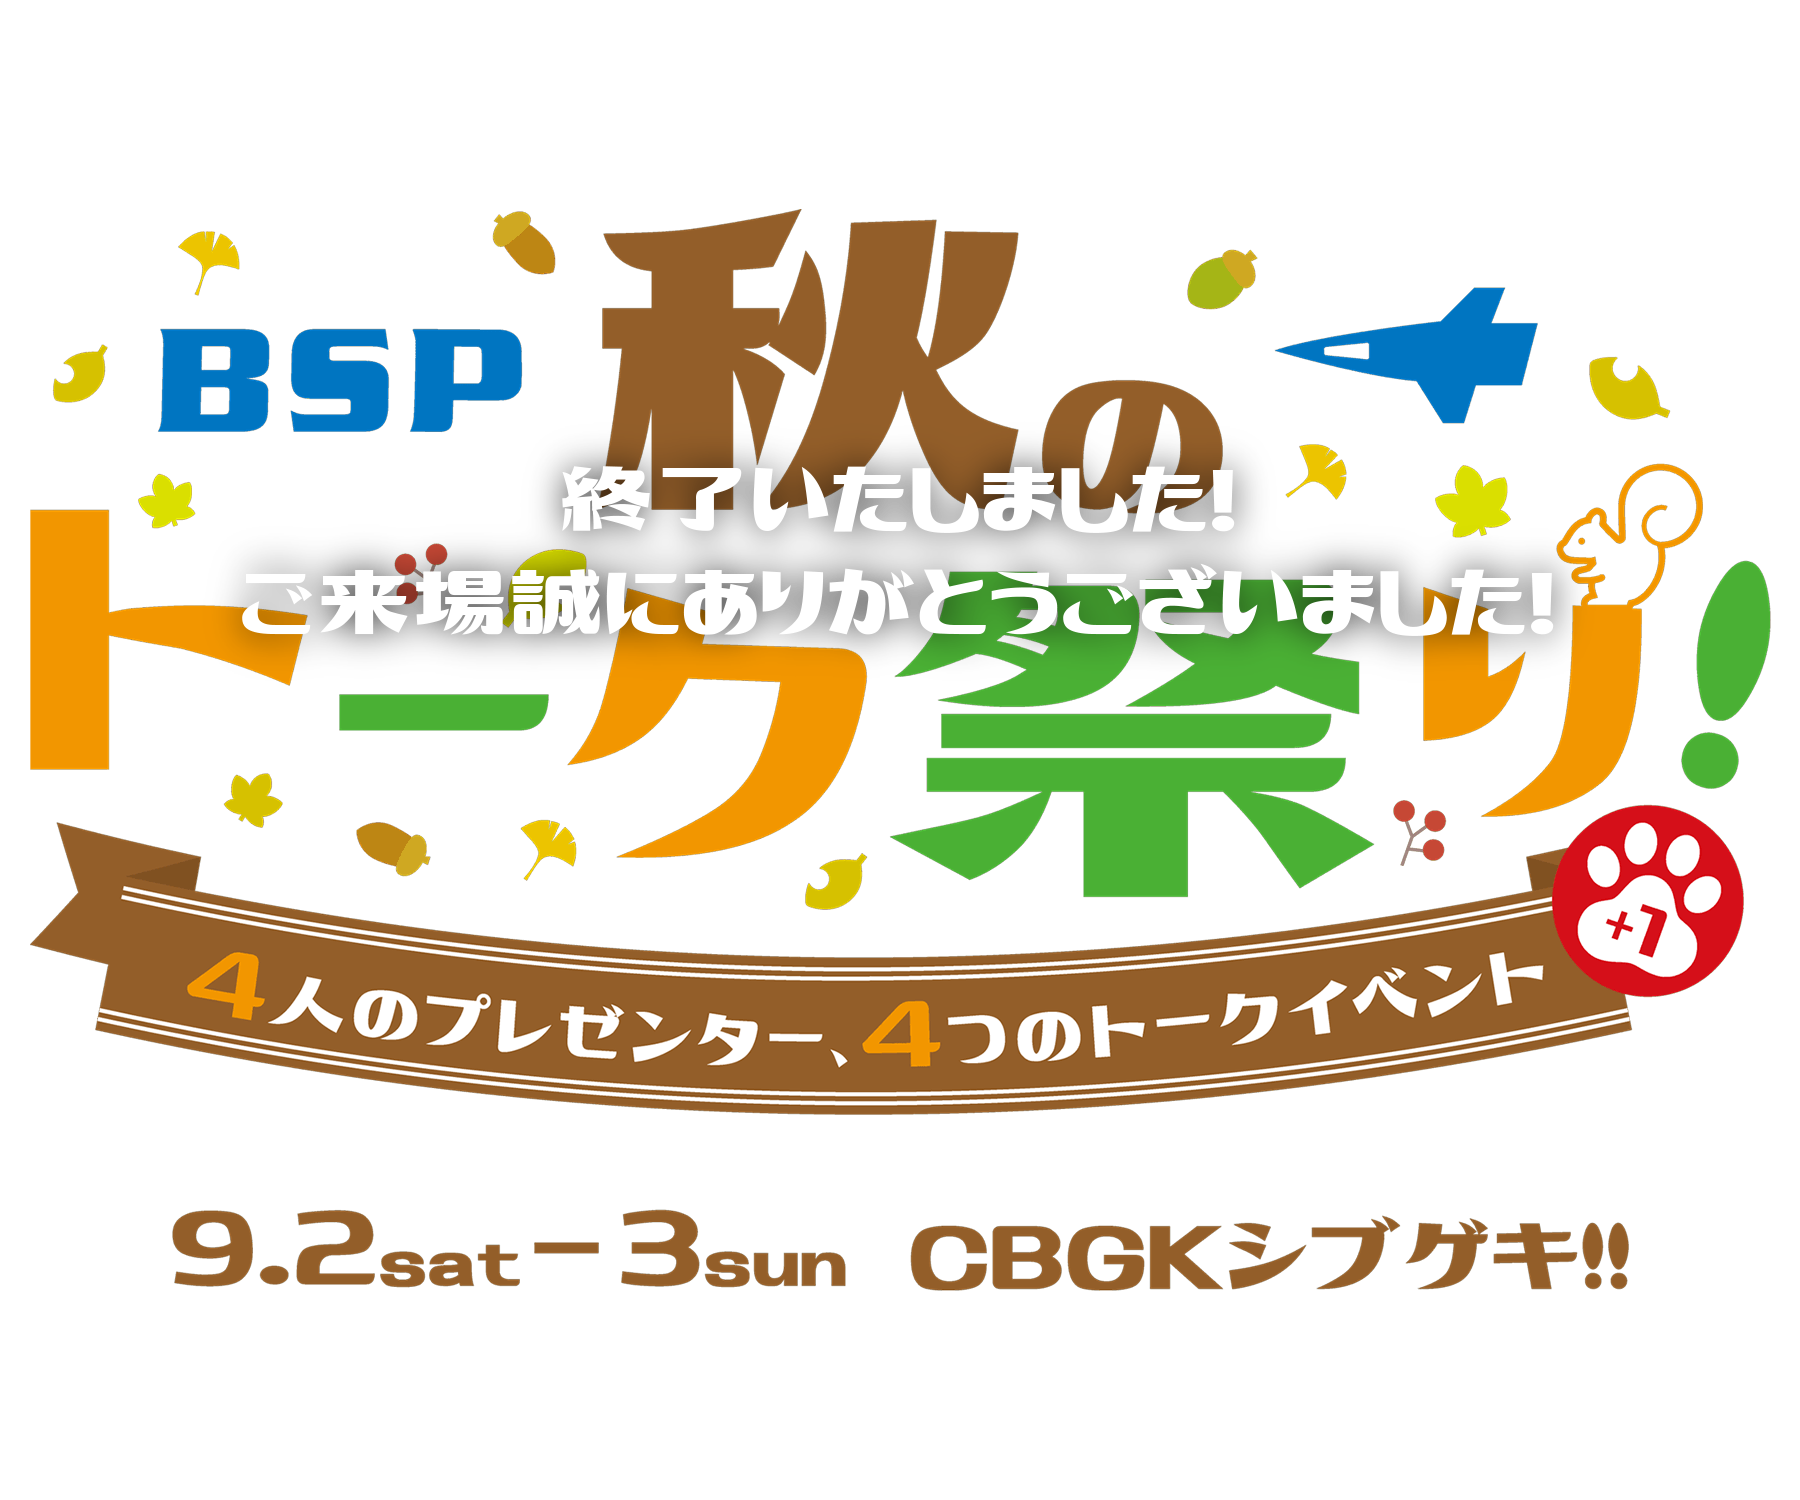 『BSP　秋のトーク祭り！～４人のプレゼンター、４つのトークイベント+１～』9.2sat-3sun CBGKシブゲキ!!